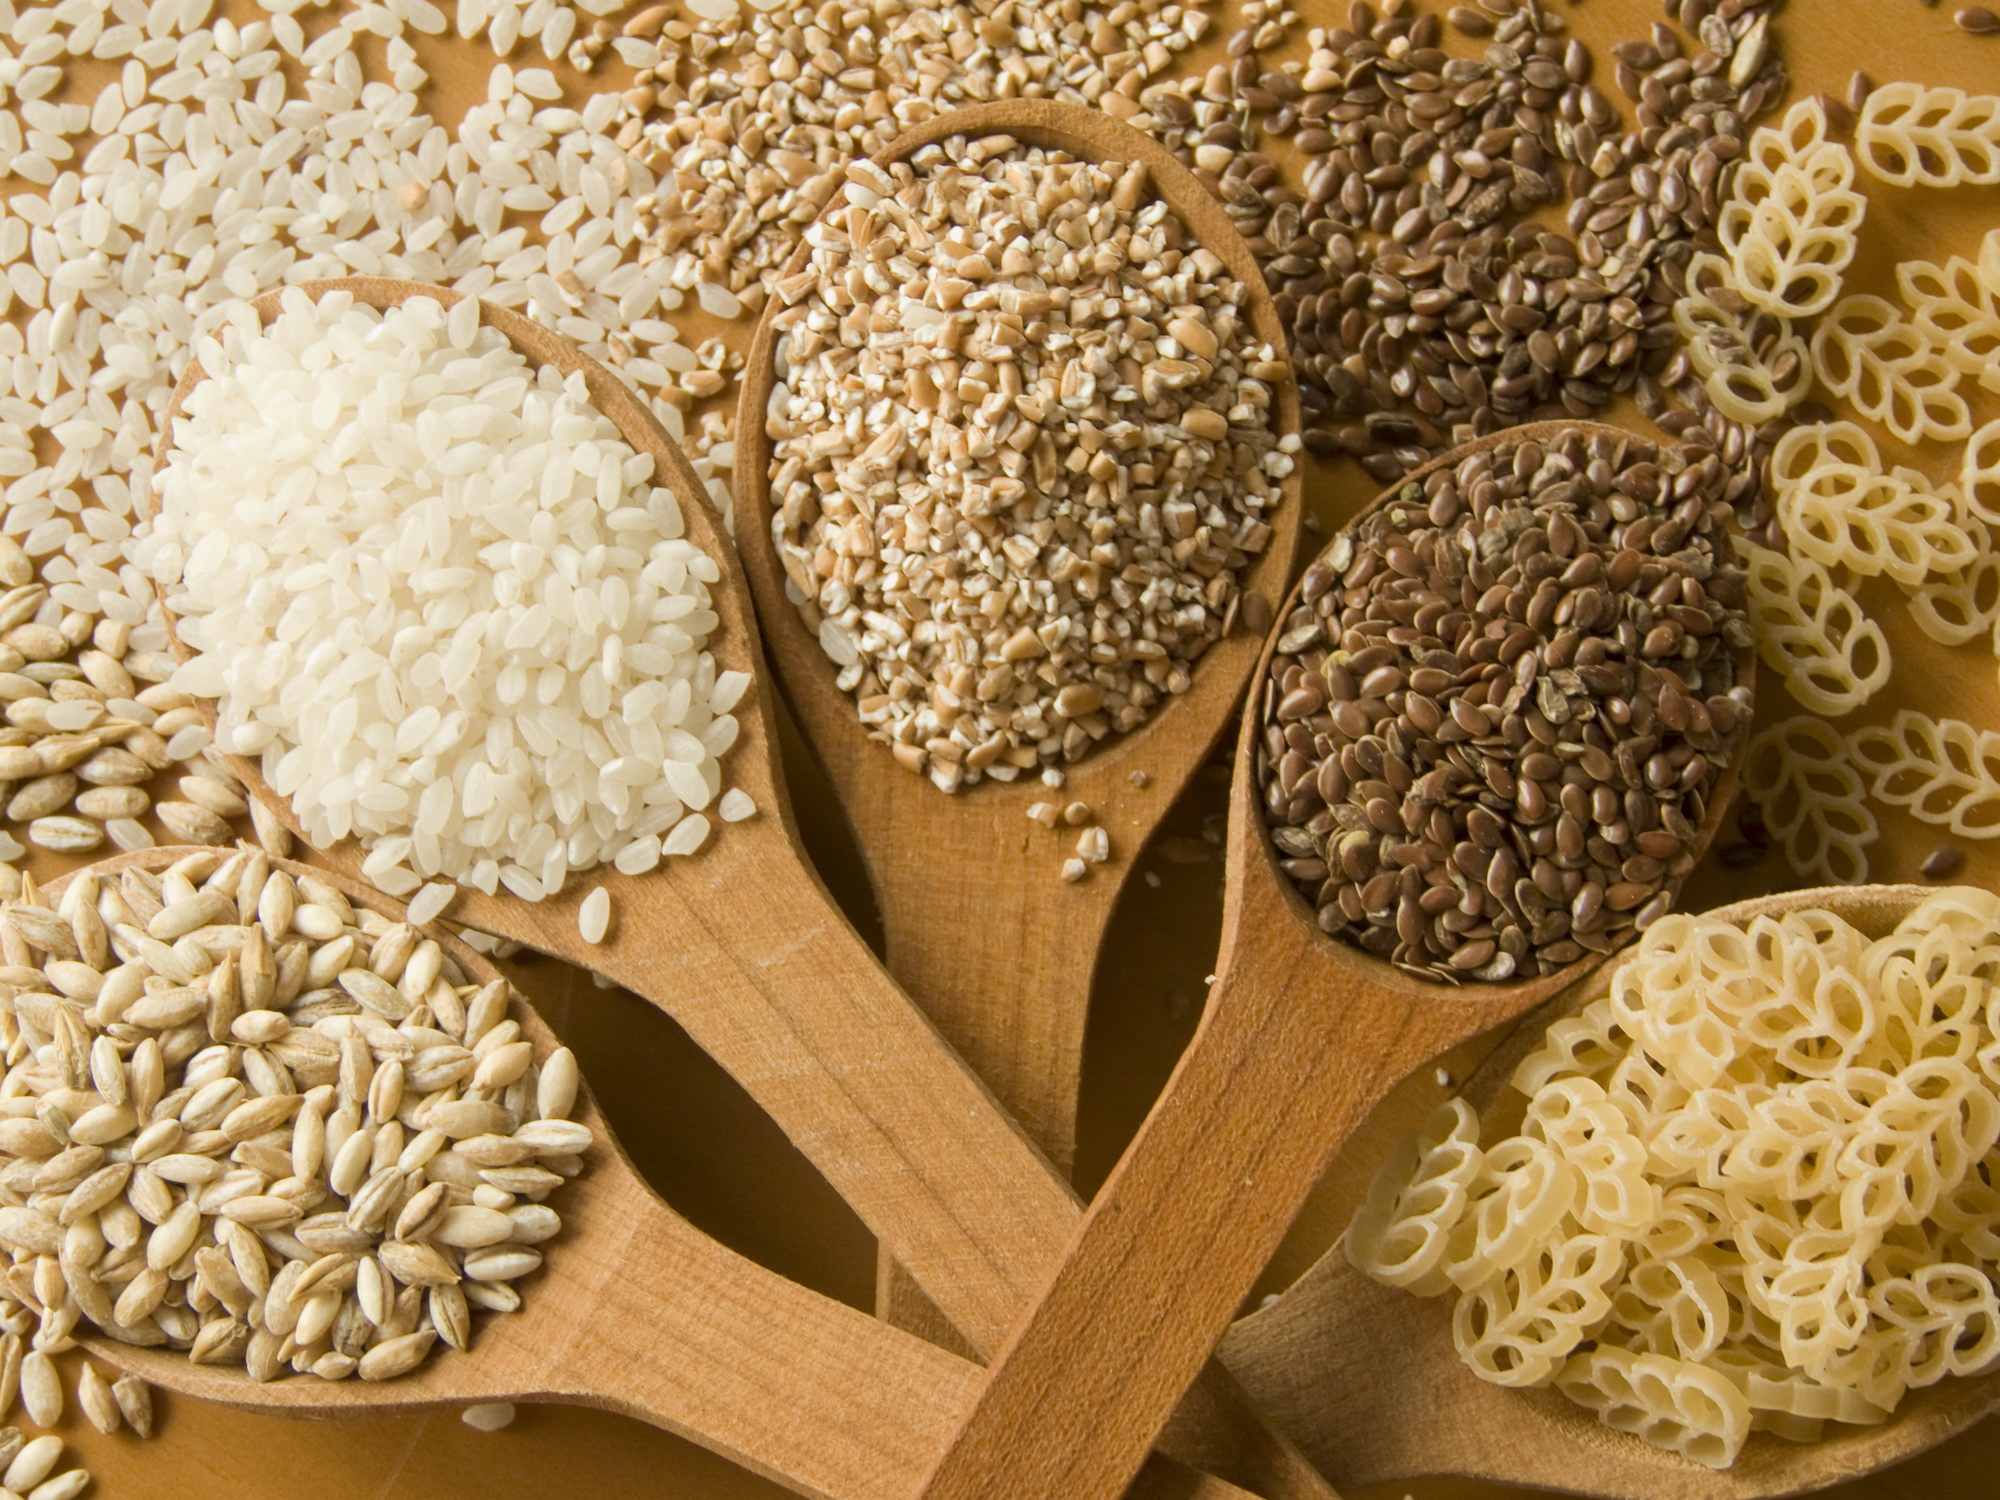 La consommation de céréales raffinées serait associée à une mortalité plus élevée. © AGfoto, Adobe Stock 